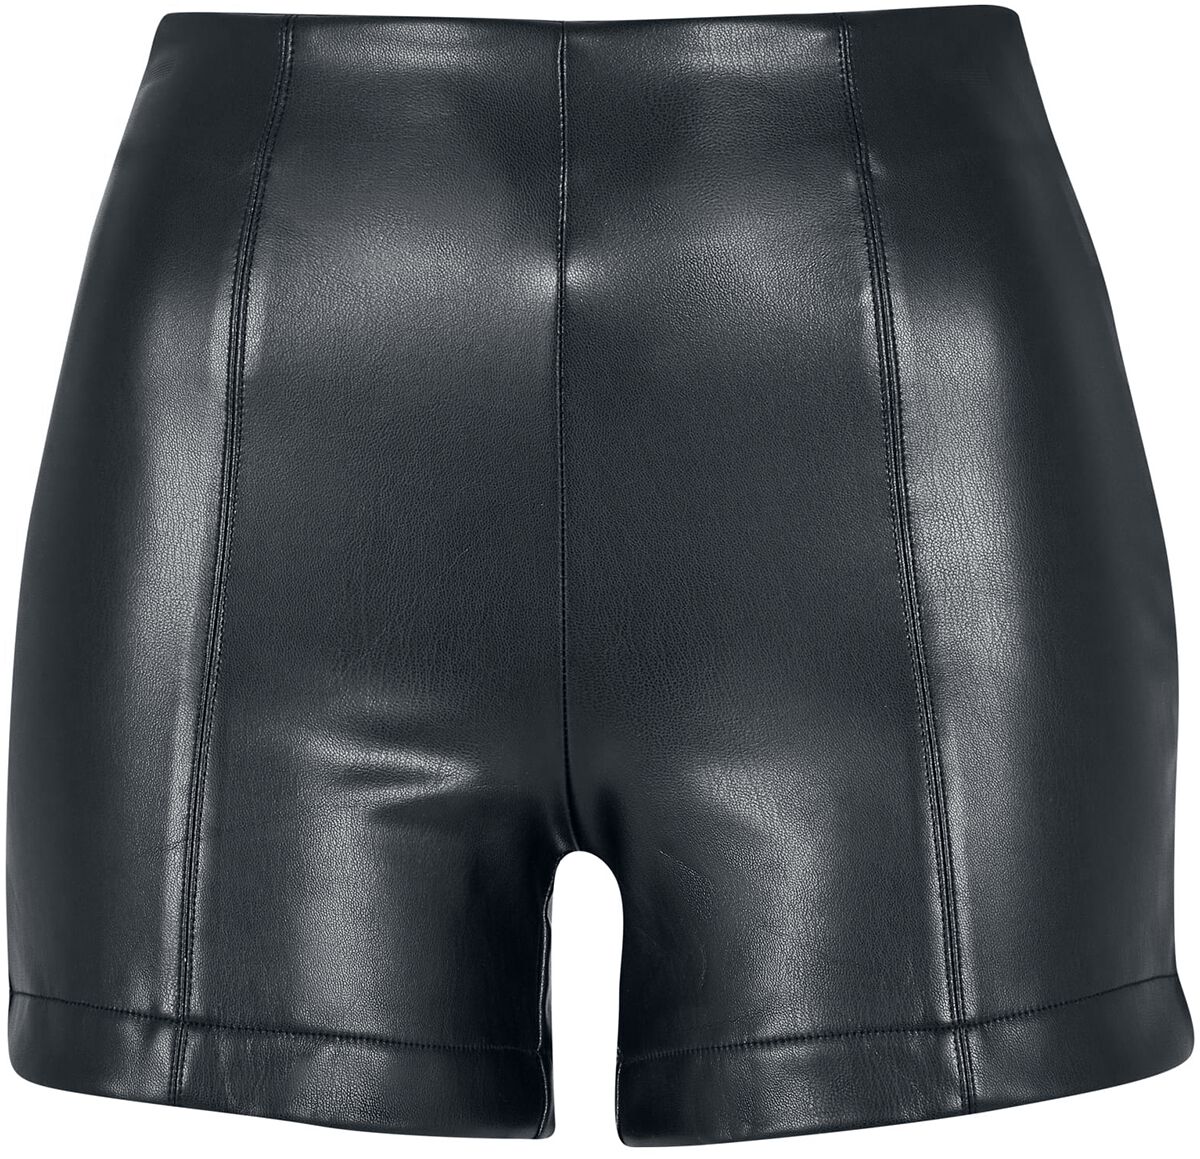 Urban Classics Short - Ladies Synthetic Leather Shorts - XS bis 4XL - für Damen - Größe M - schwarz